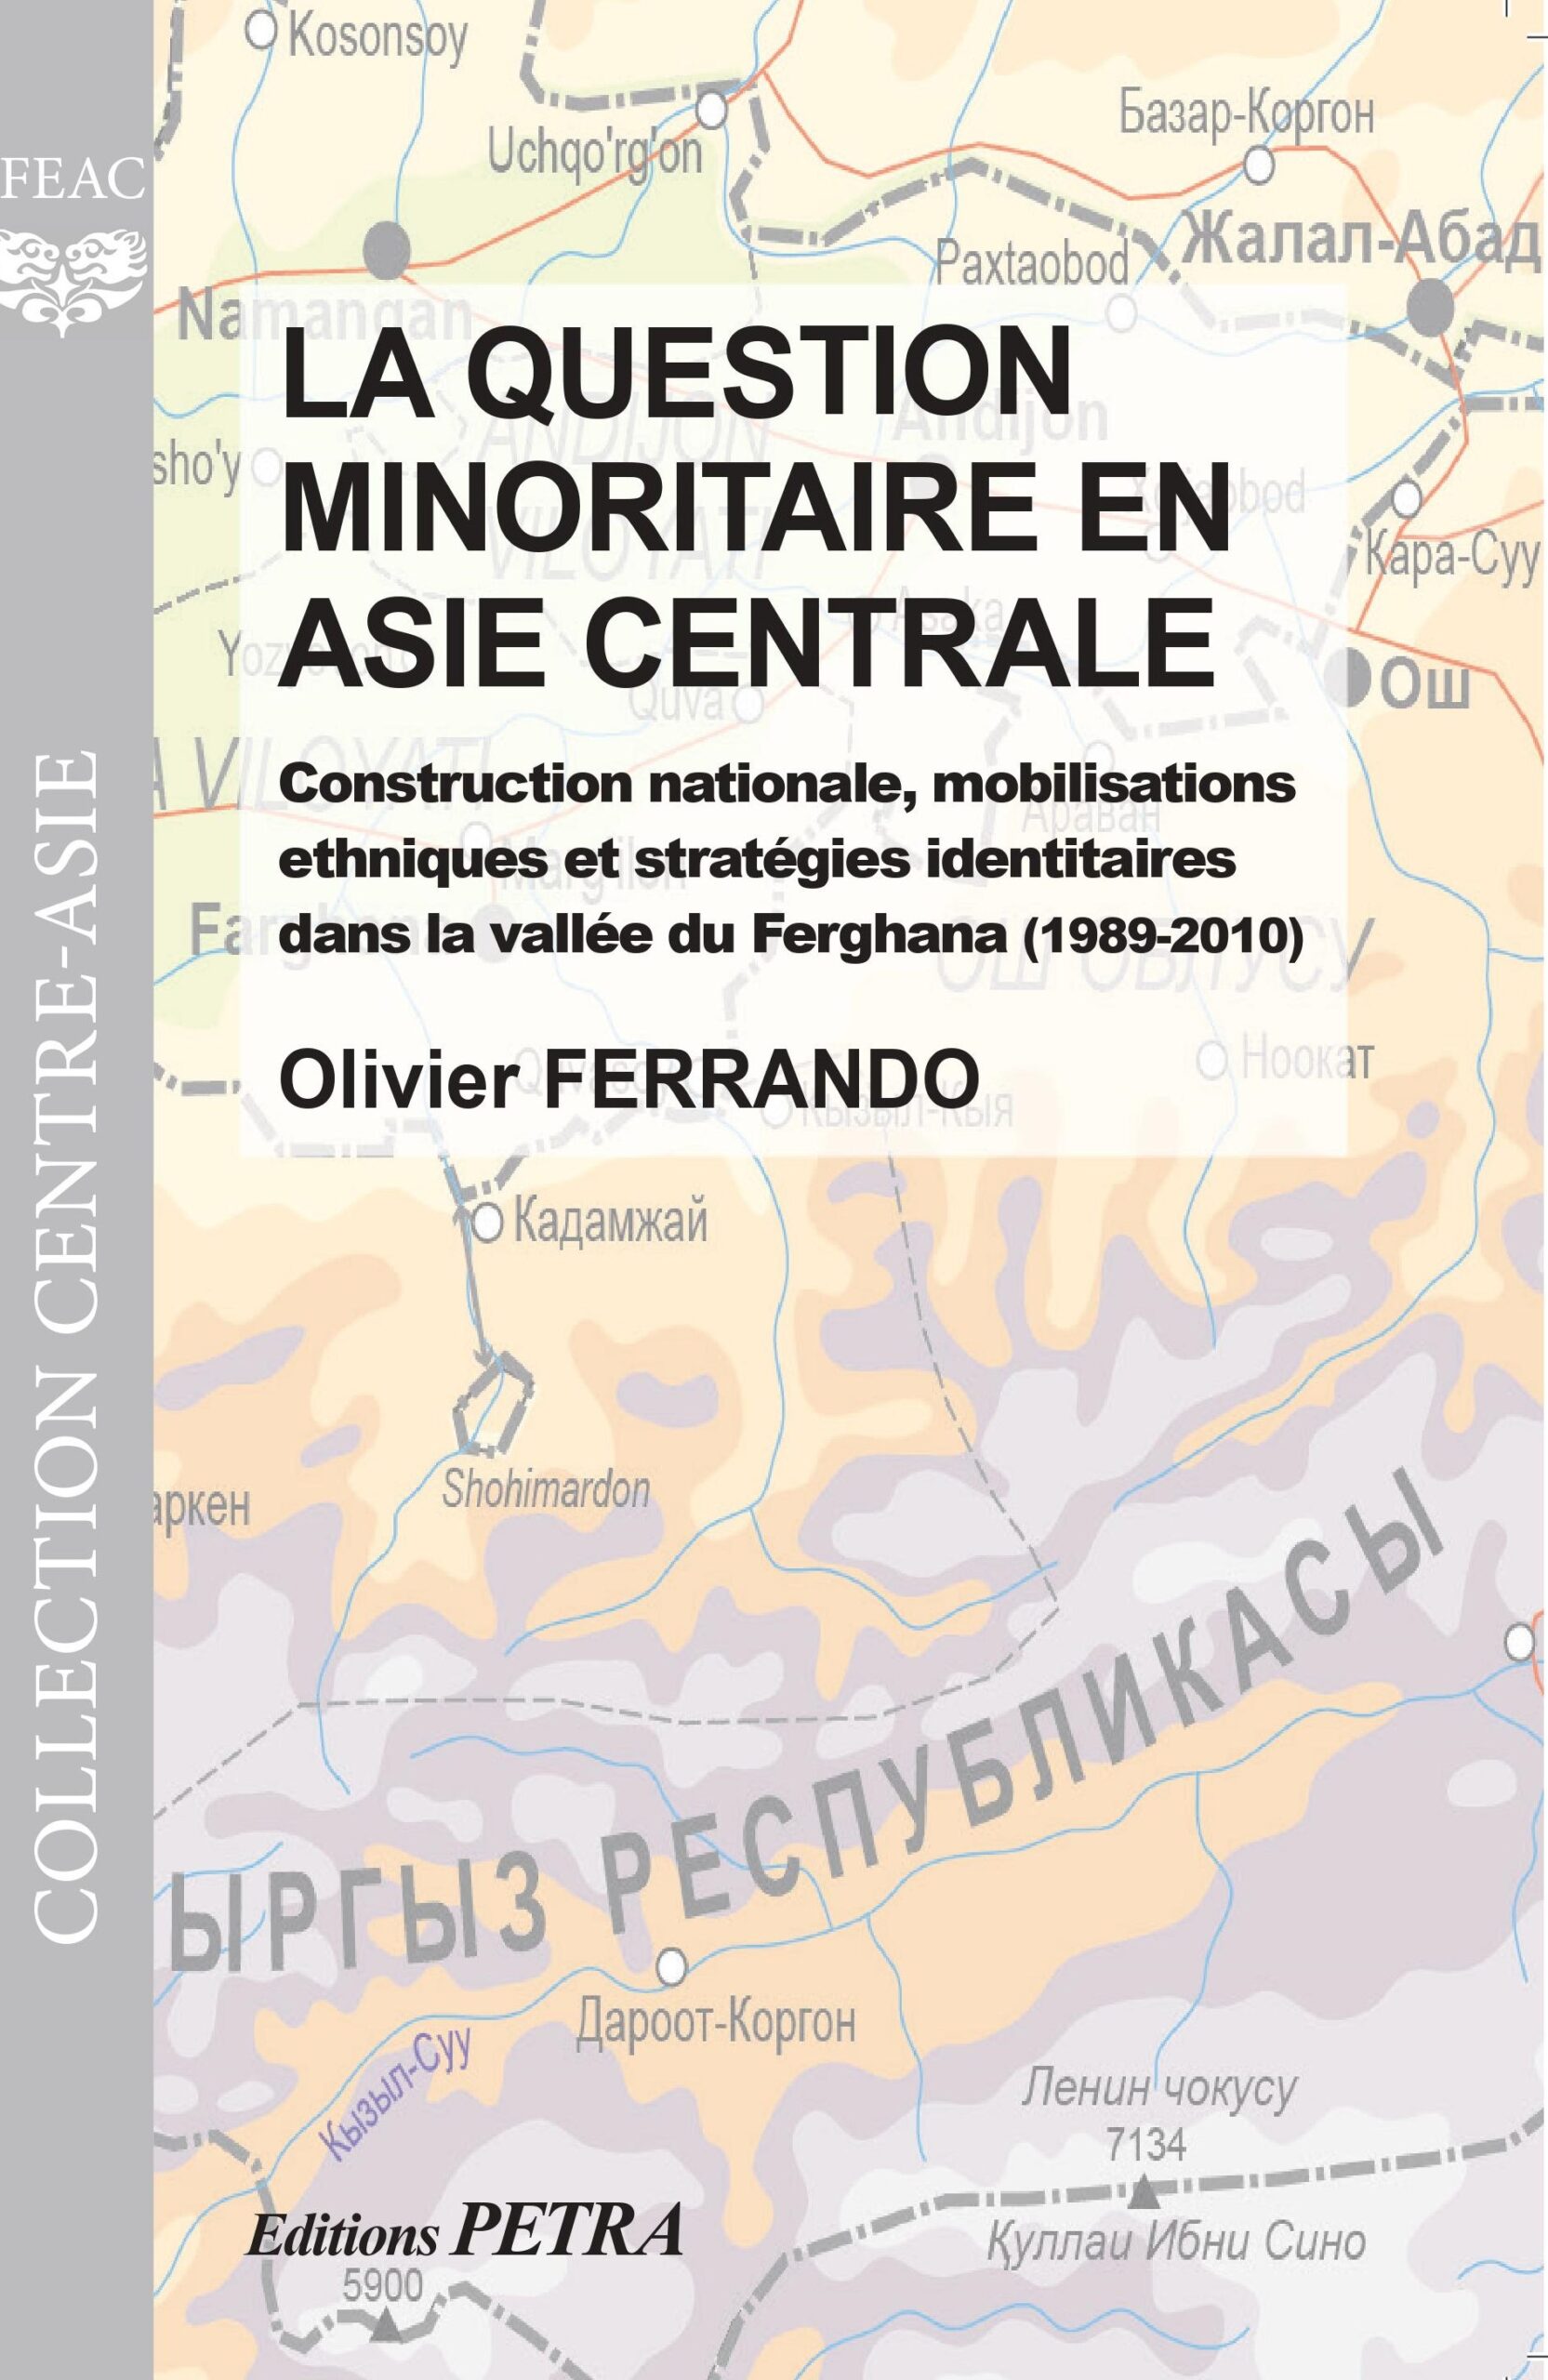 Couverture de l'ouvrage "La question minoritaire en asie centrale", par Olivier FERRANDO